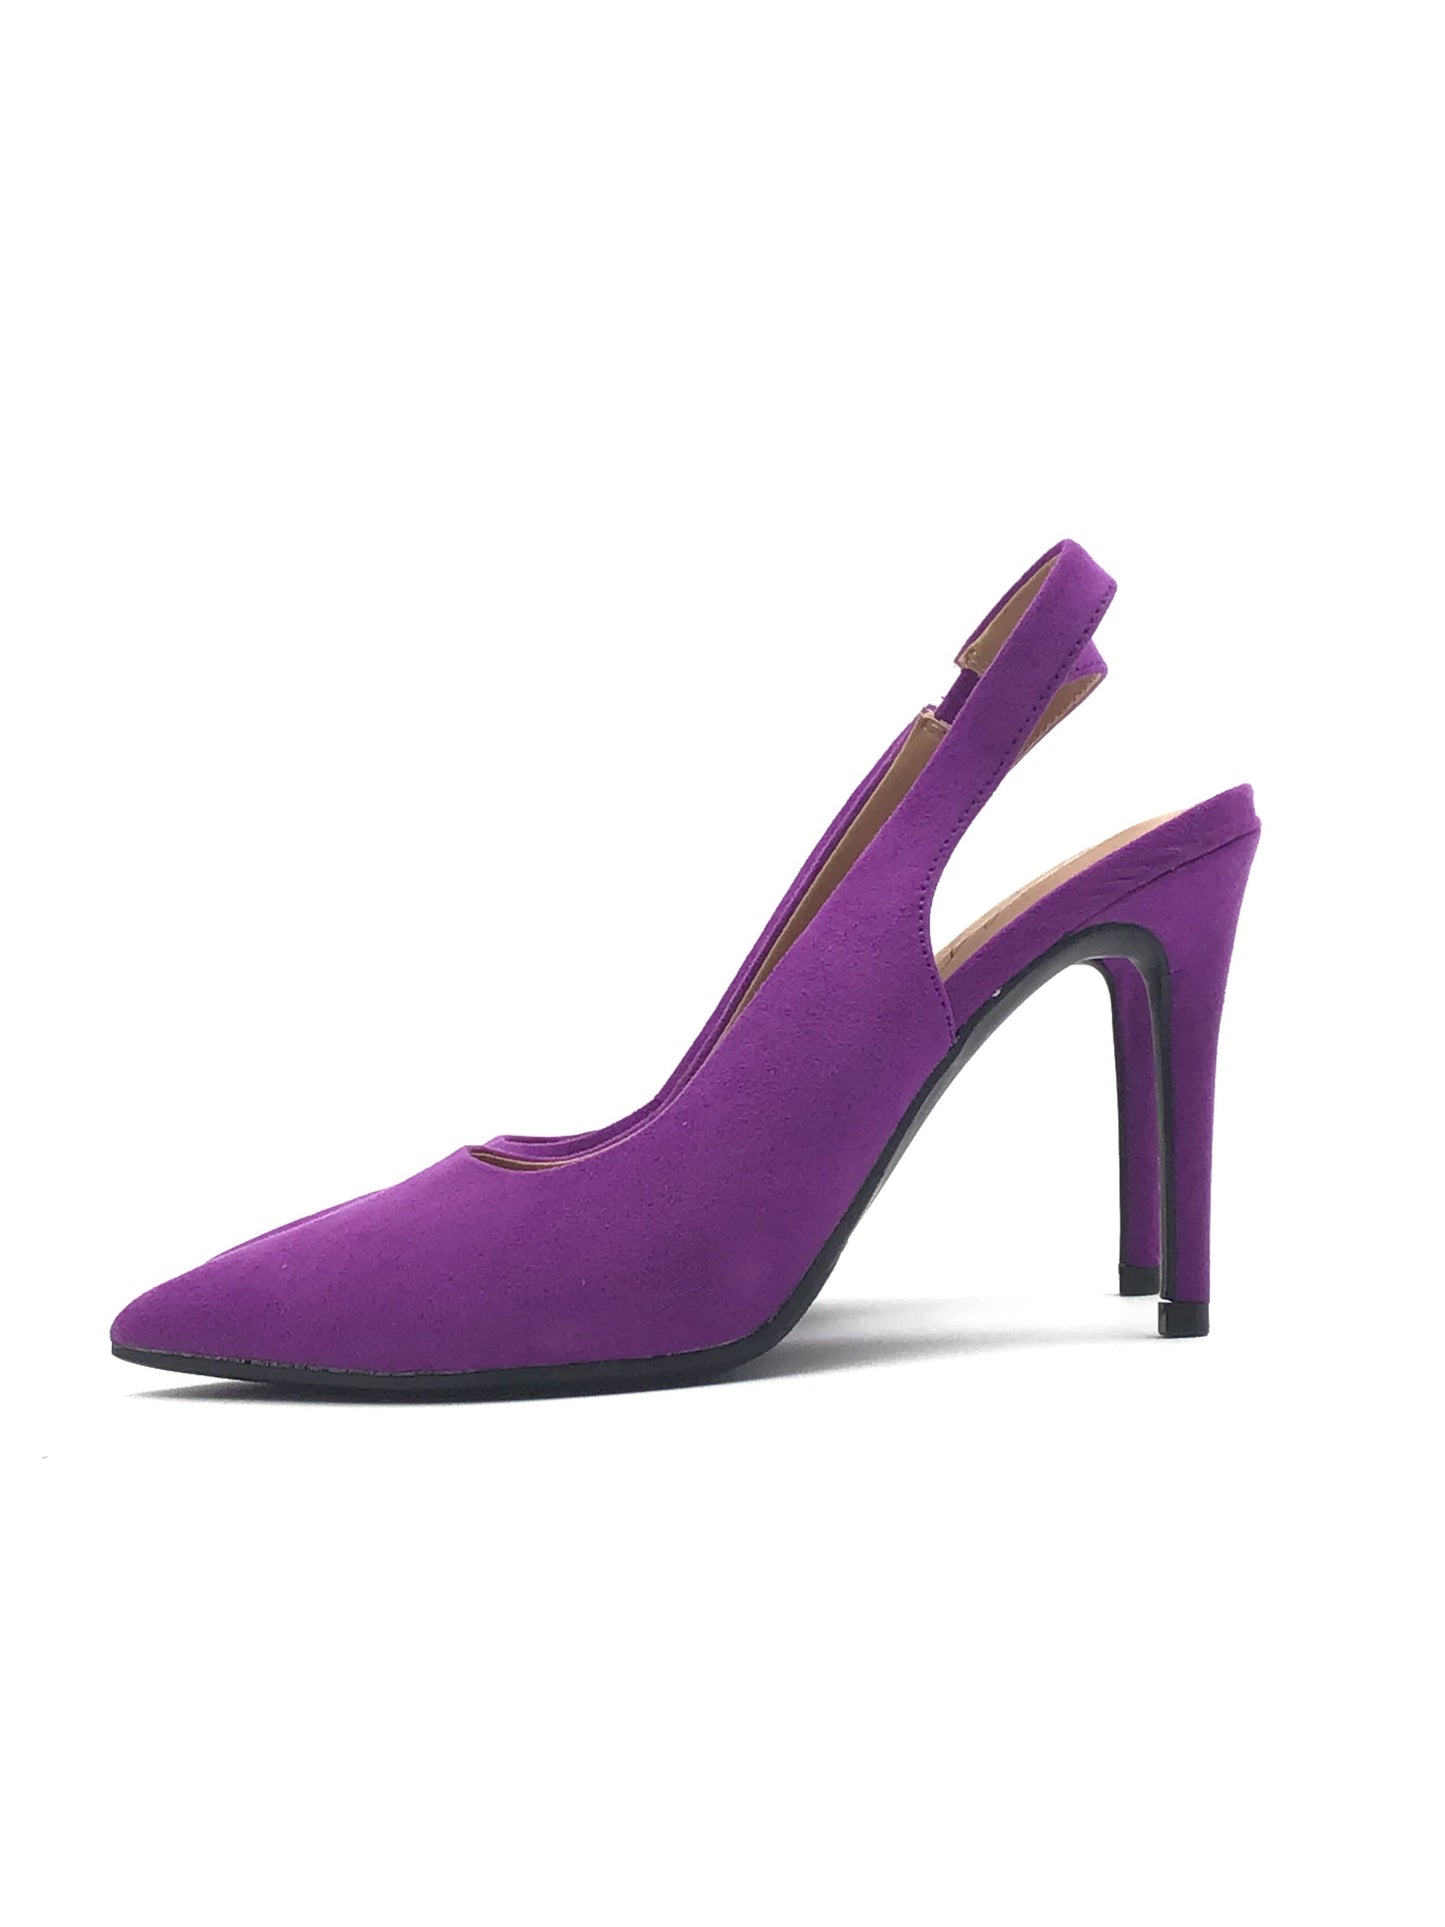 Purple Shoes Heels Stiletto Clothes Mentor, Size 5.5